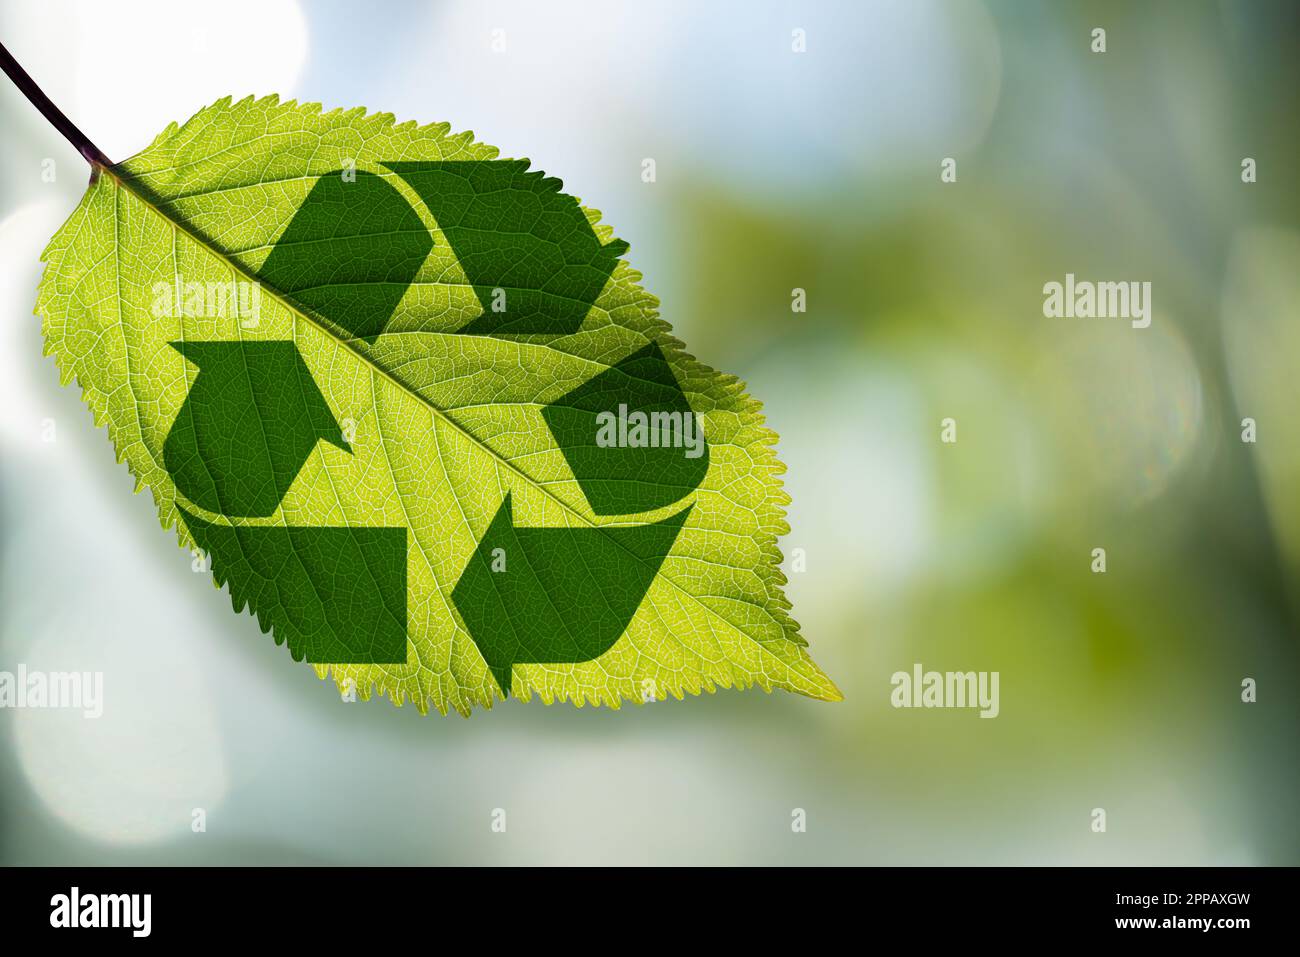 Symbole de recyclage sur une feuille verte. Photo de haute qualité Banque D'Images